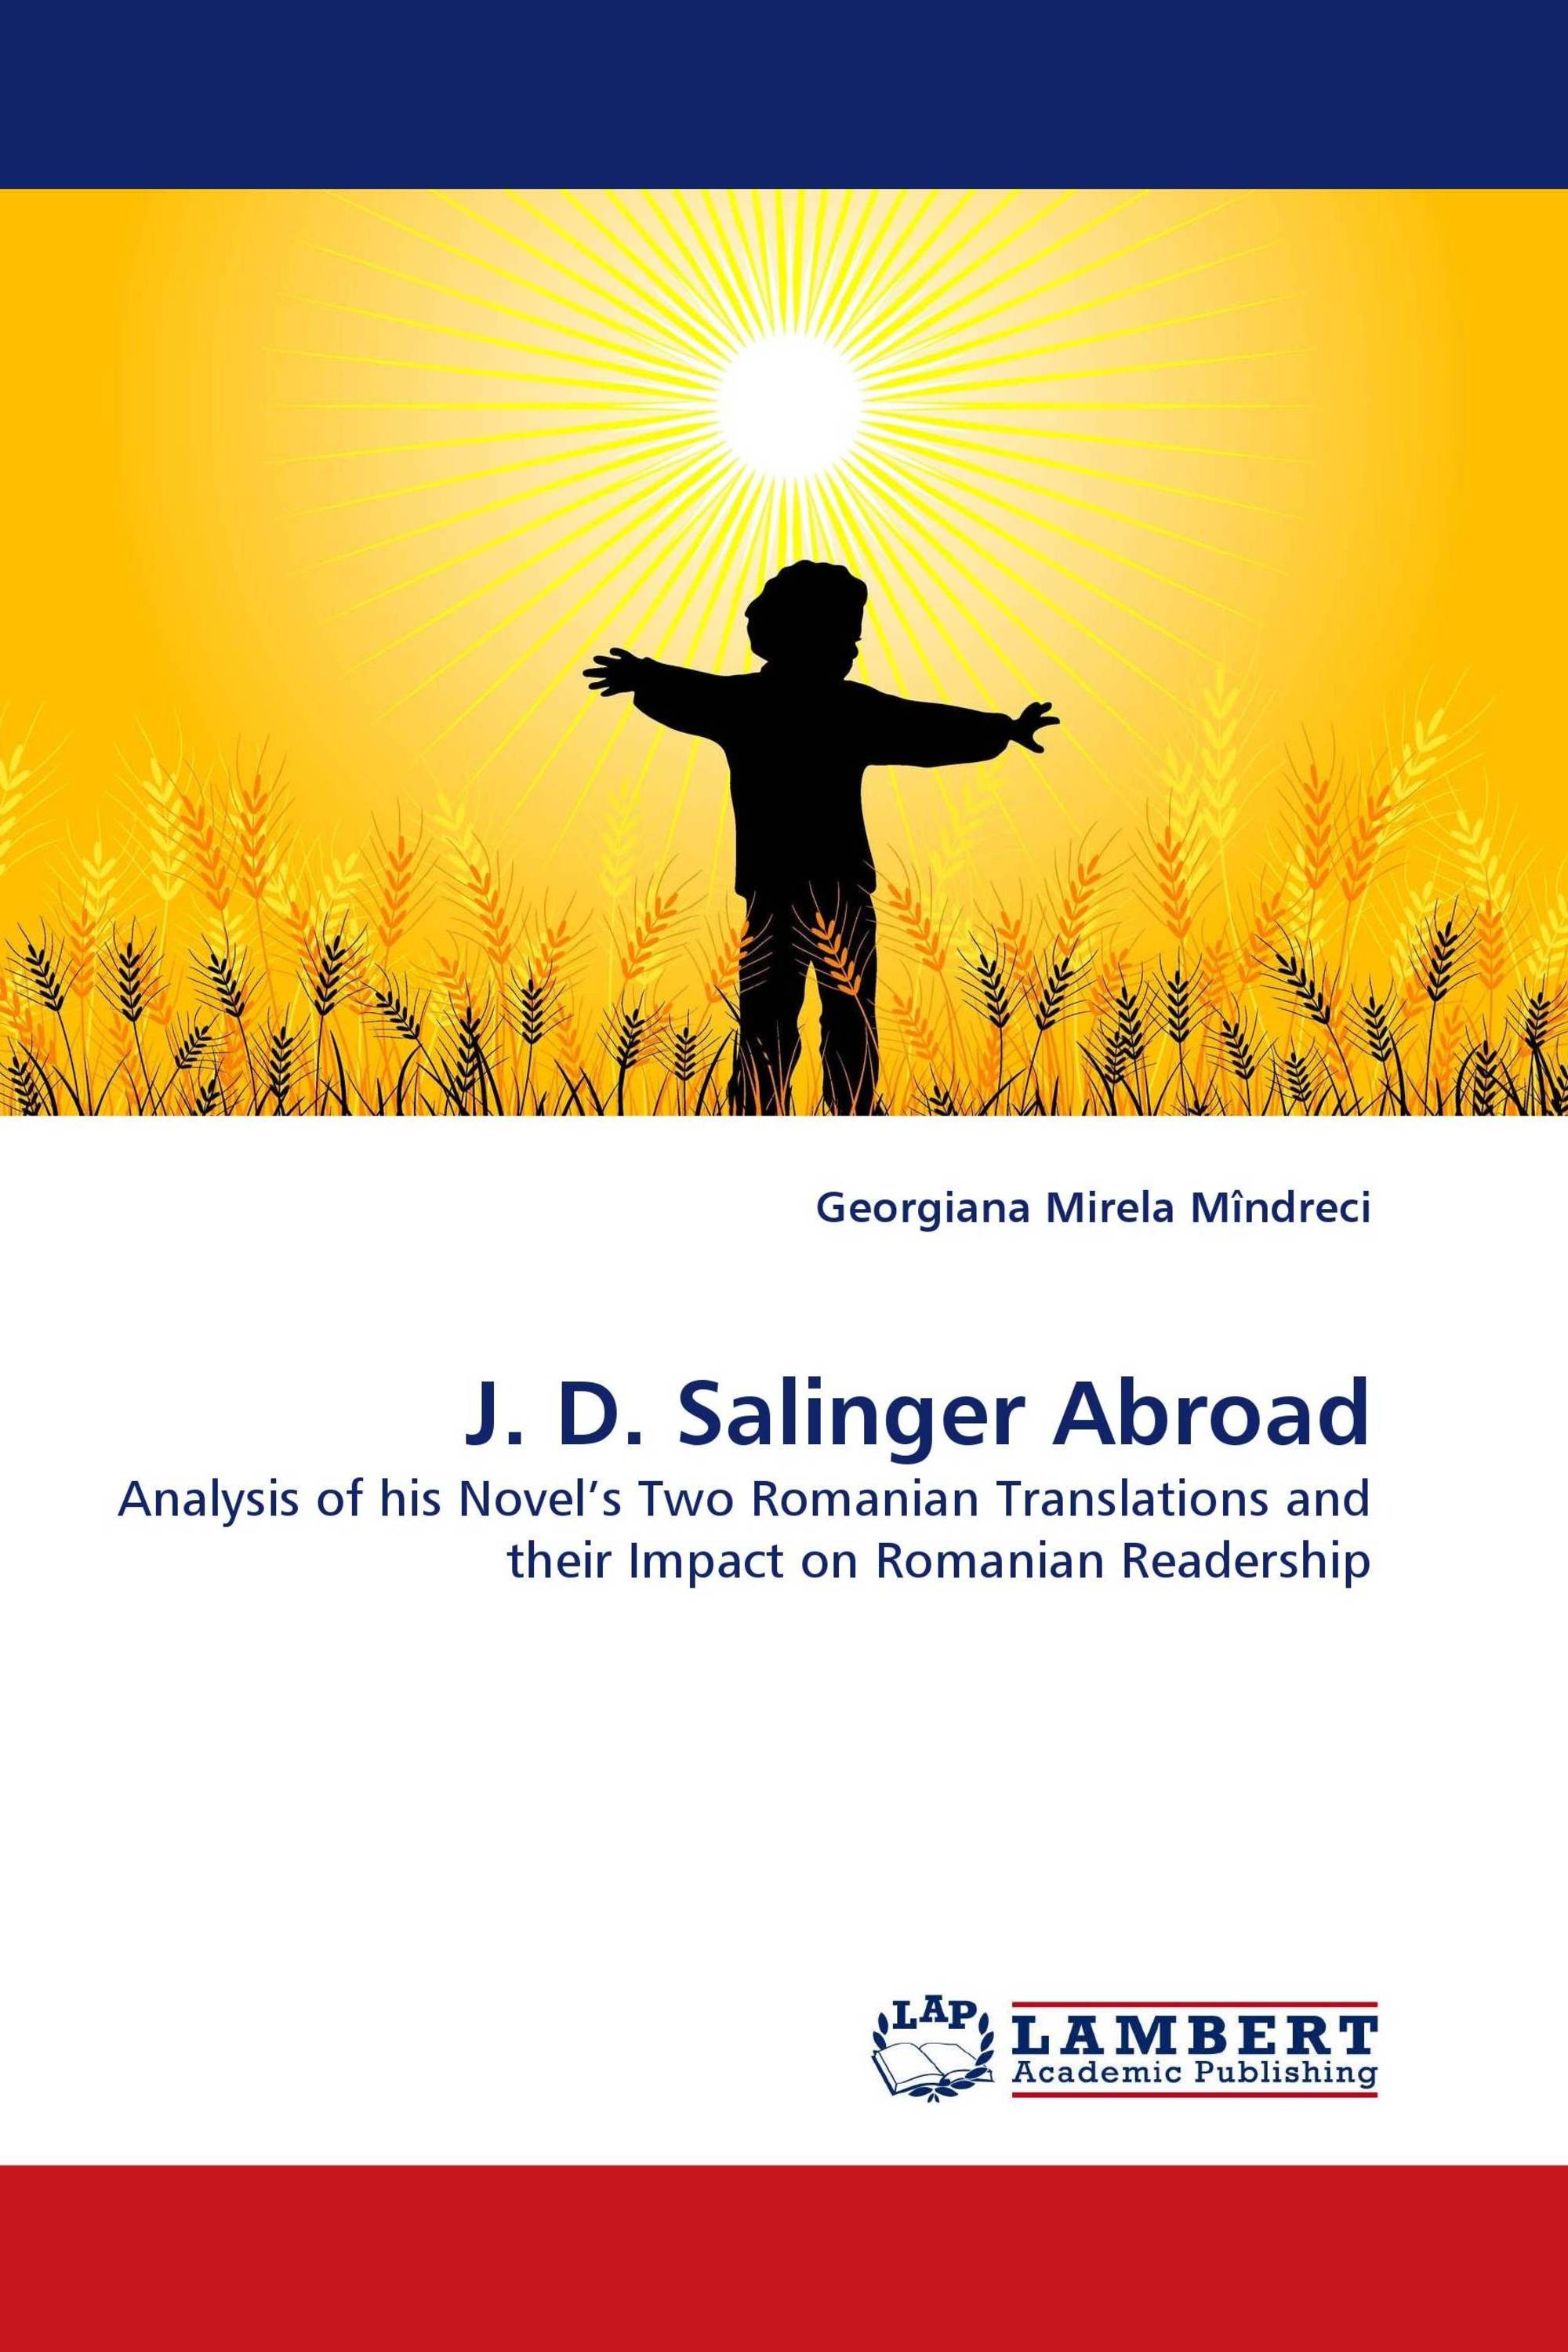 J. D. Salinger Abroad